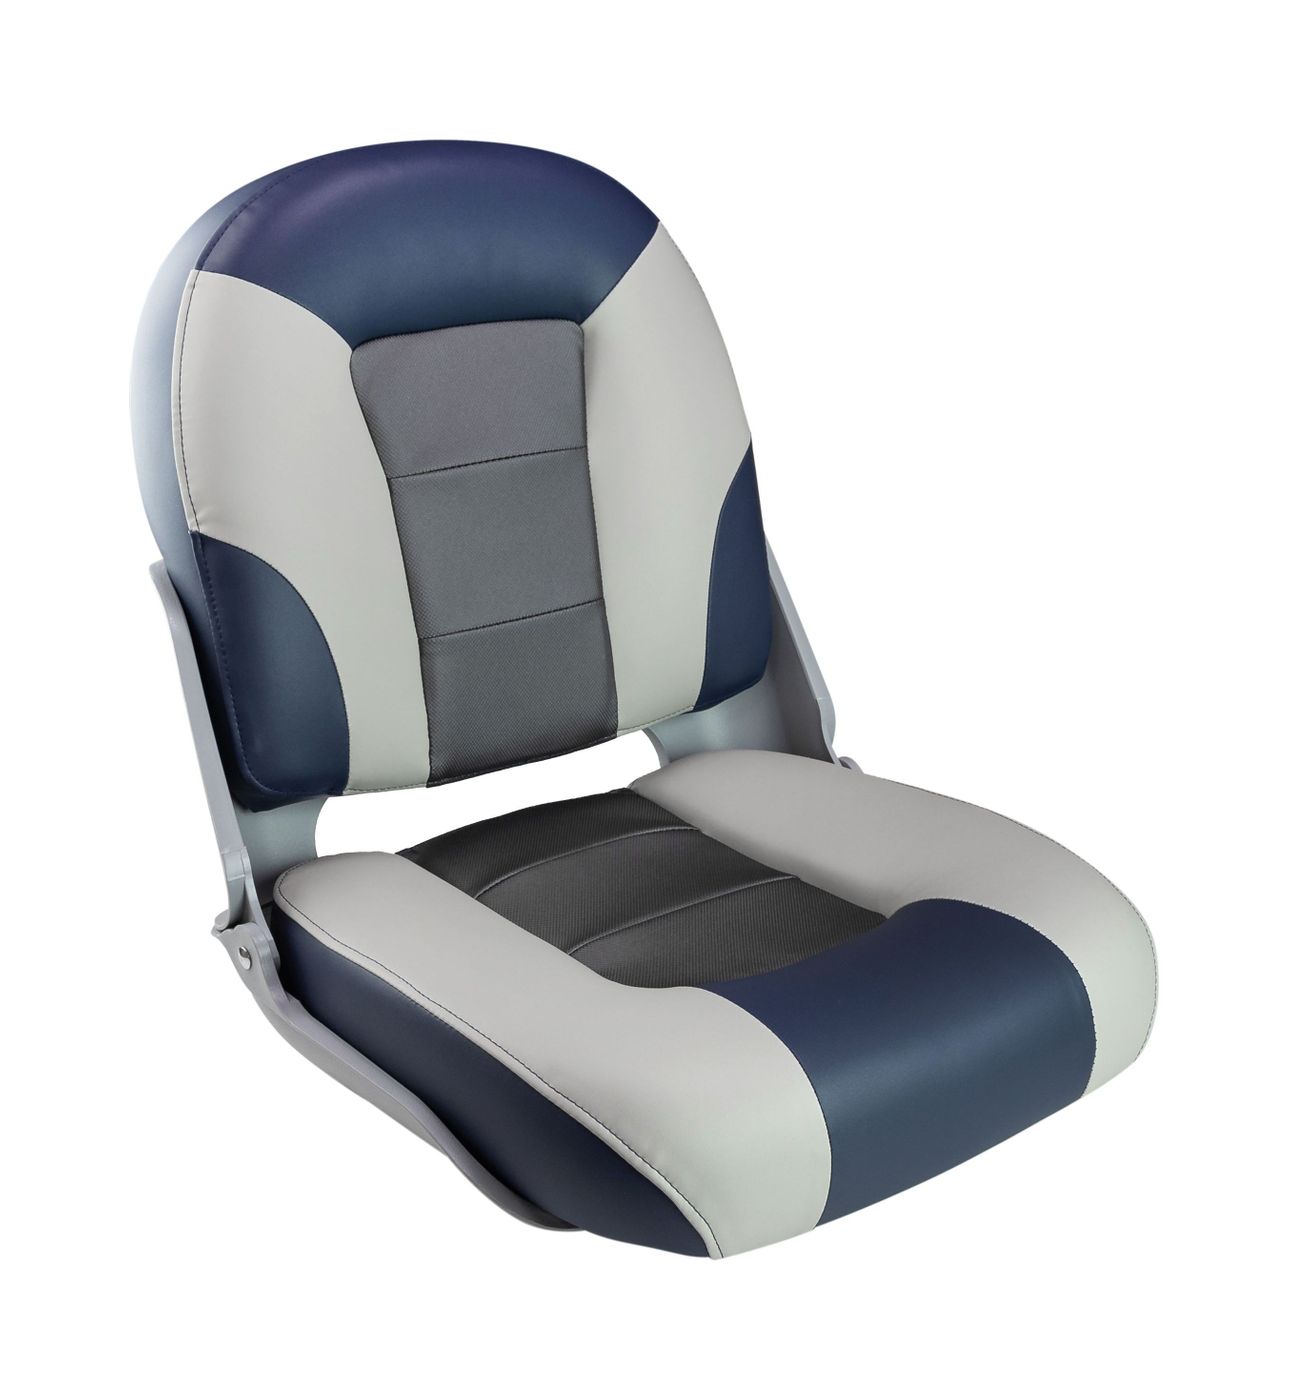 Кресло SKIPPER PREMIUM с высокой спинкой, синий/серый/темно-серый 1061069 кресло skipper premium с высокой спинкой серый темно серый 1061067